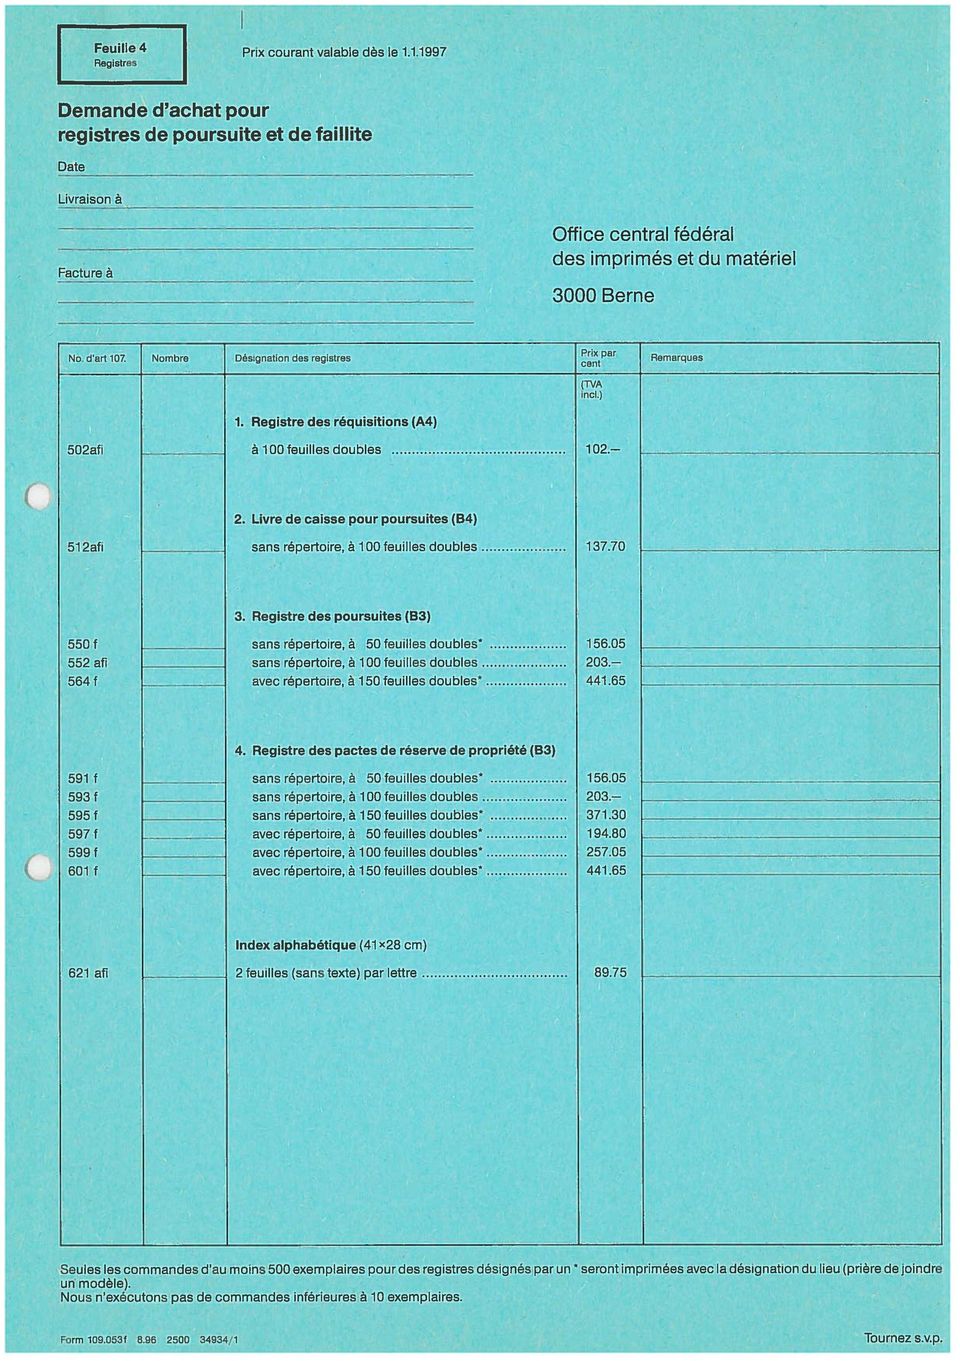 Livre de caisse pour poursuites (B4) sans röpertoire, ä 00 feuilles doubles 37.70 3.